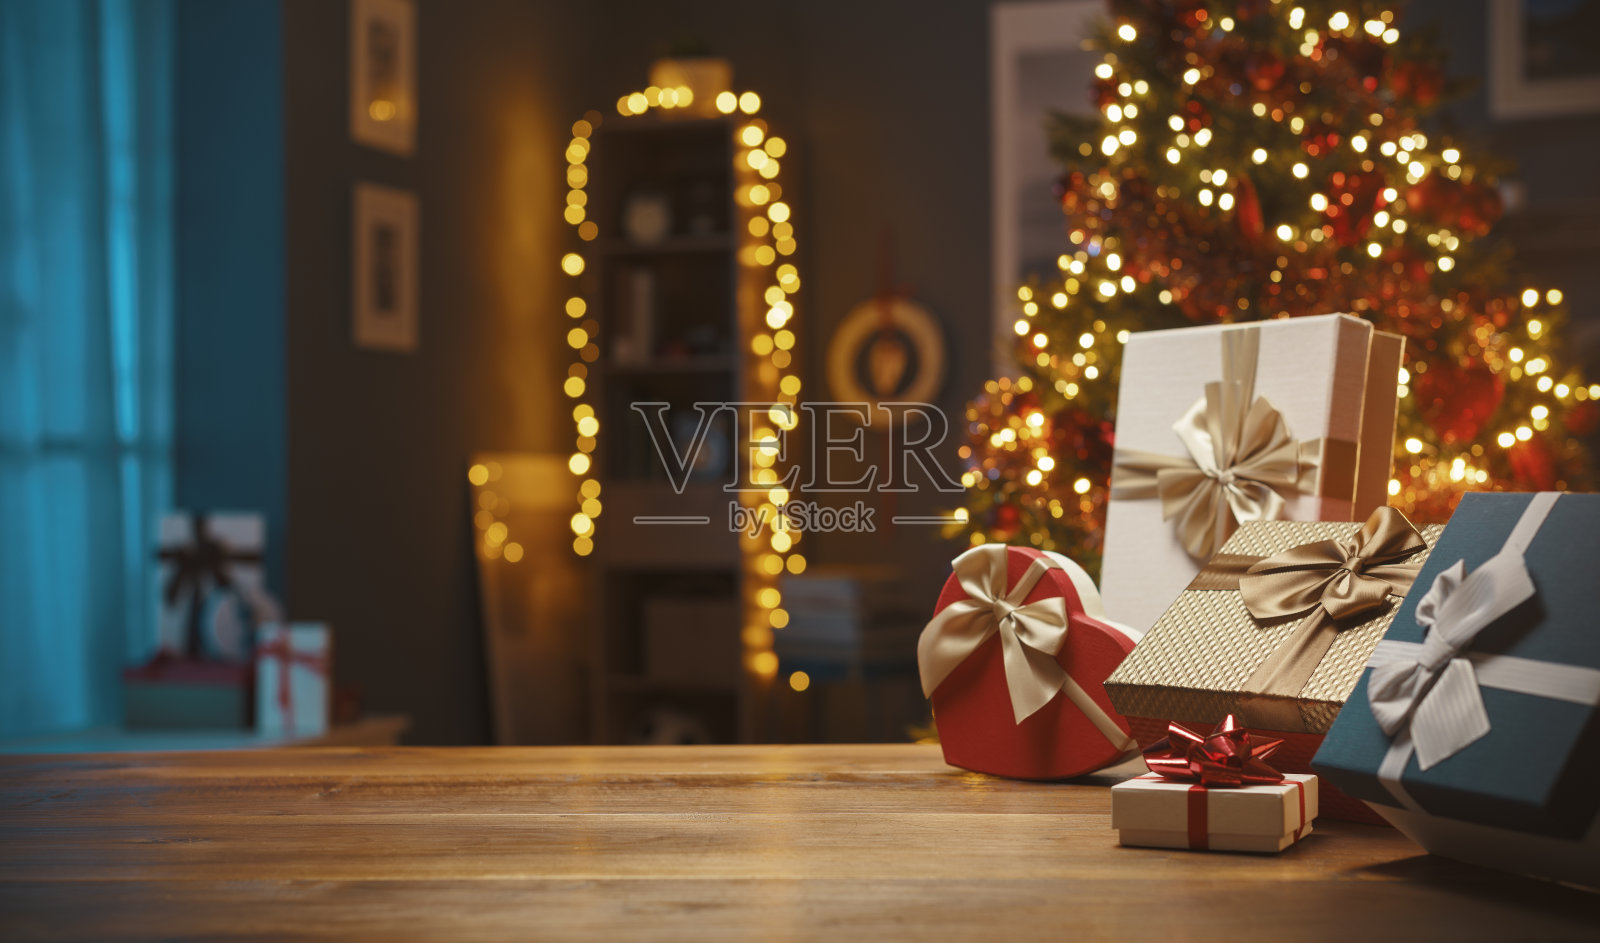 美麗的圣誕禮物和裝飾燈照片攝影圖片